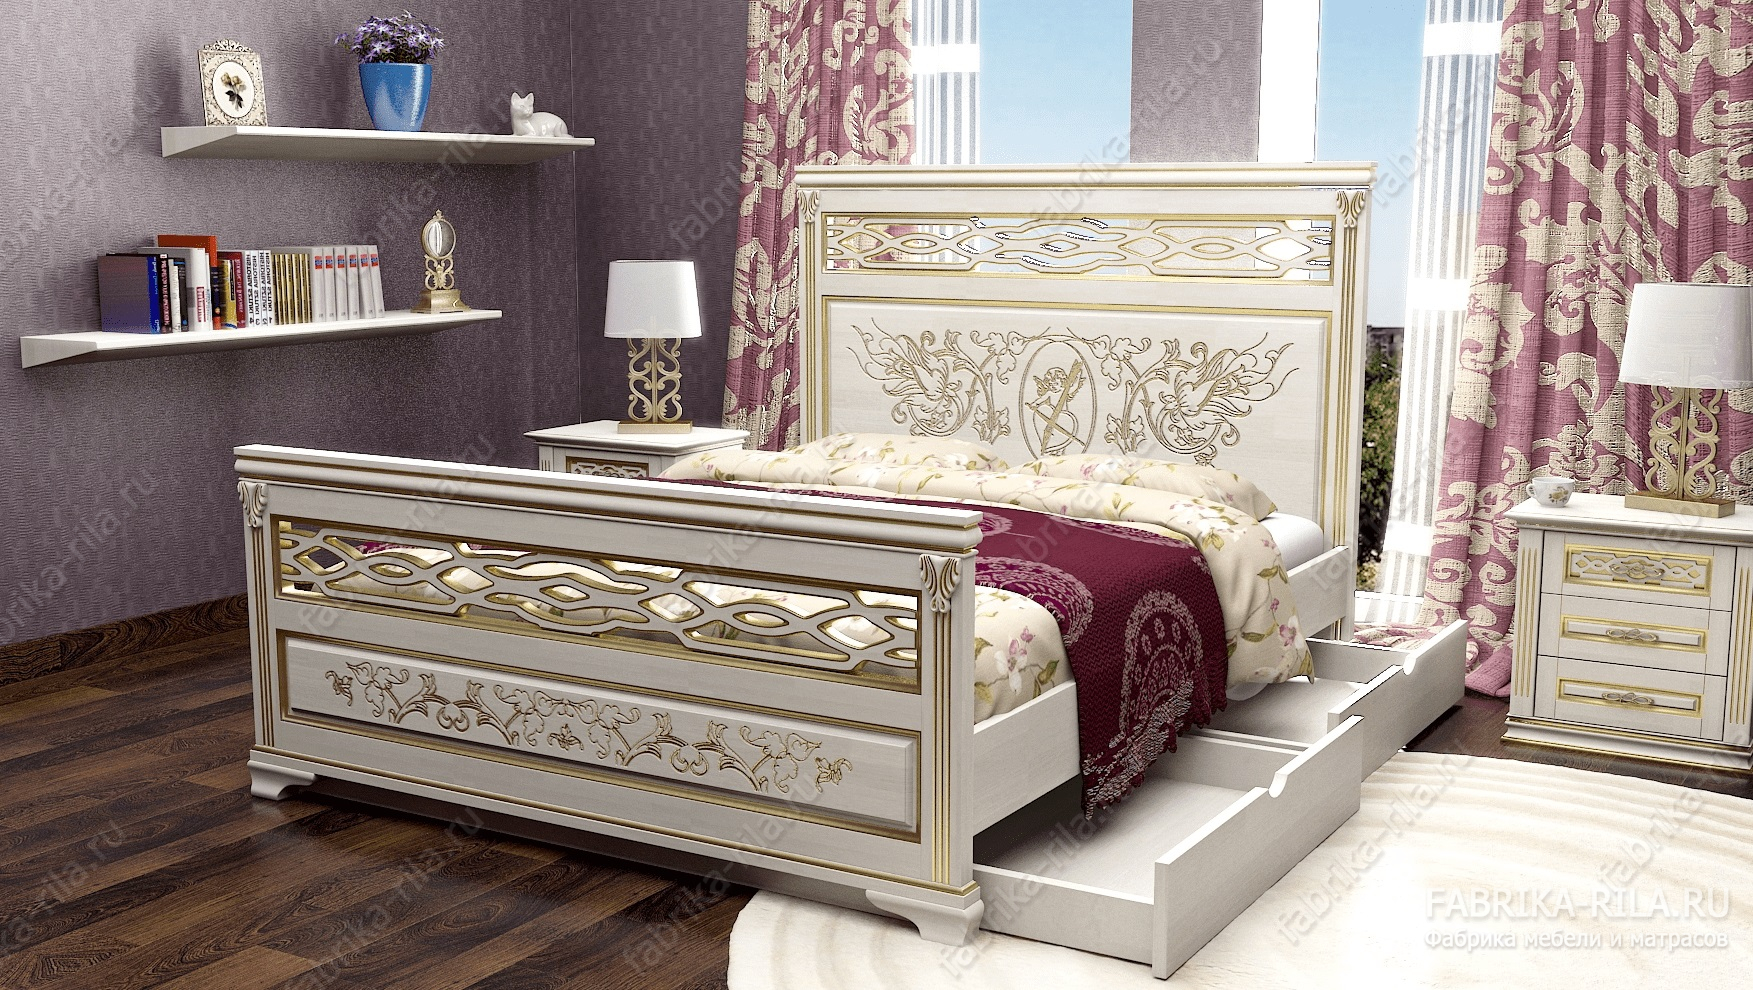 Кровать Lirоna 3 — 140x200 см. из сосны